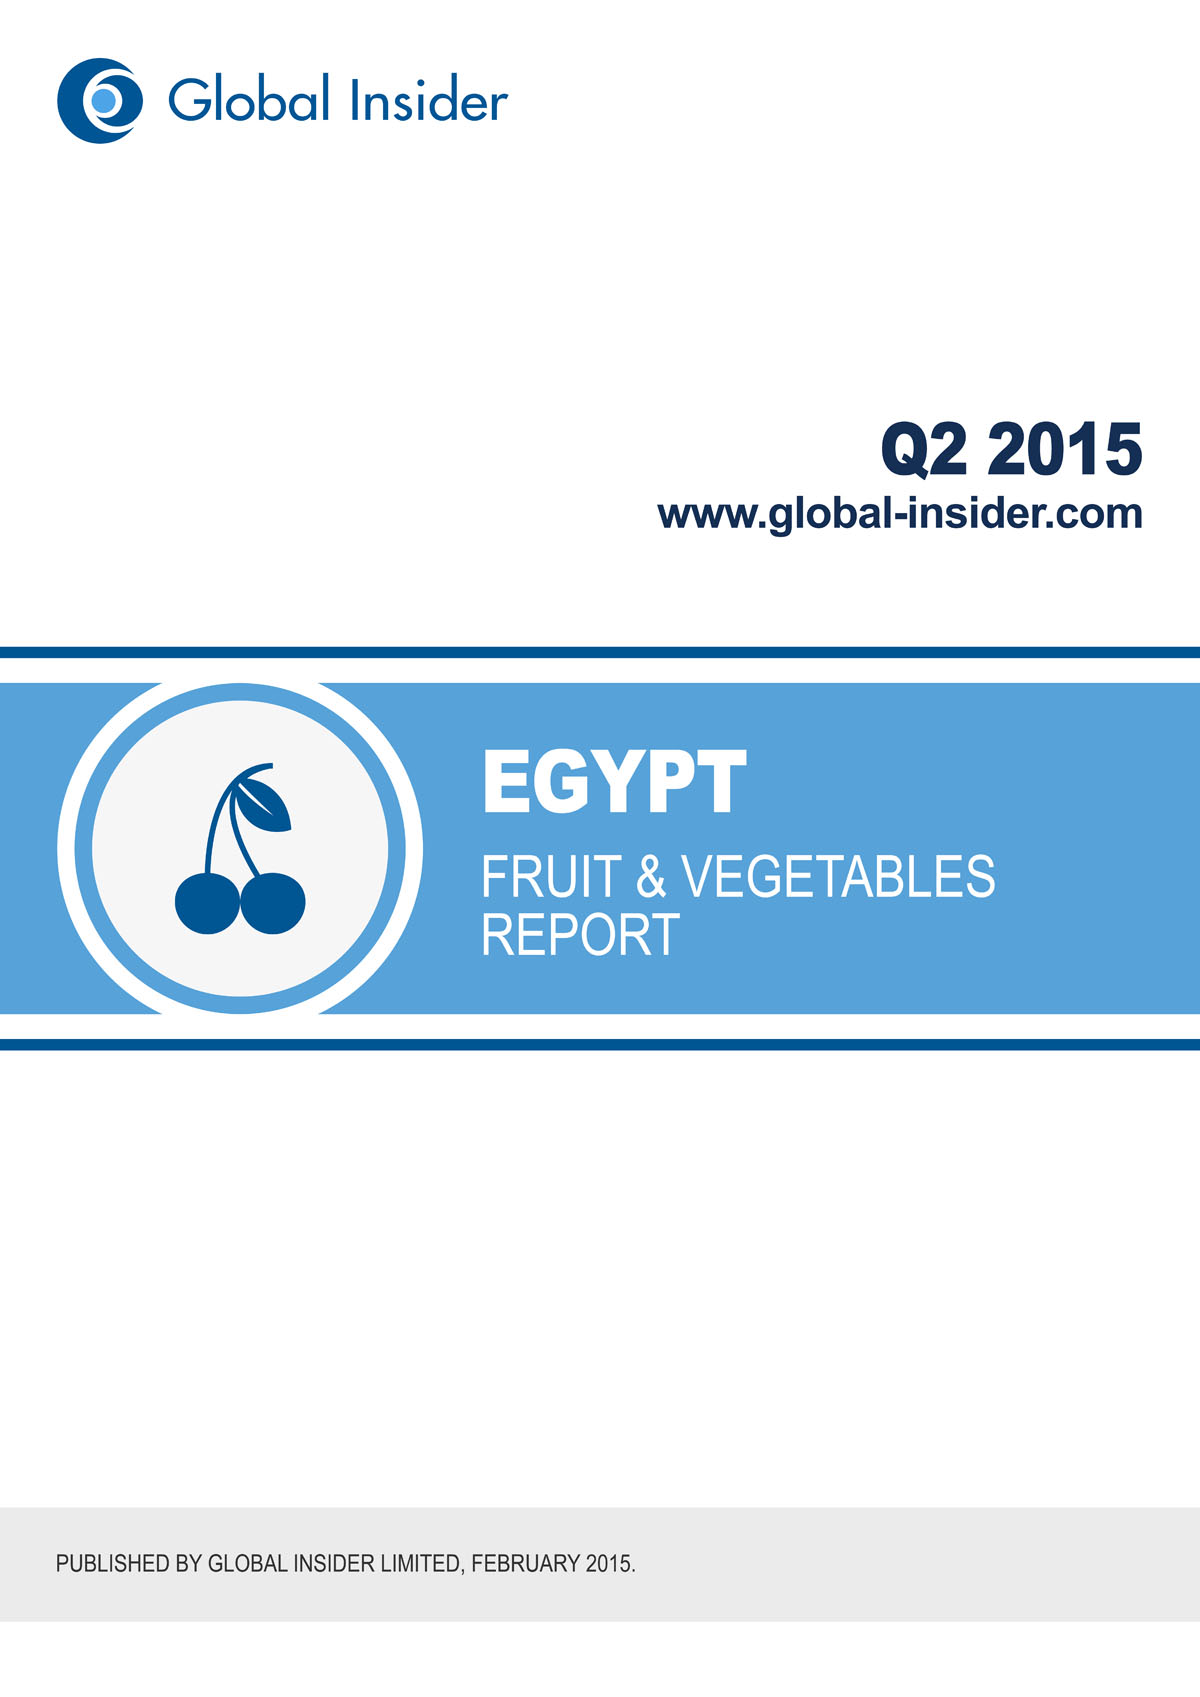 Egypt Fruit & Vegetables Report